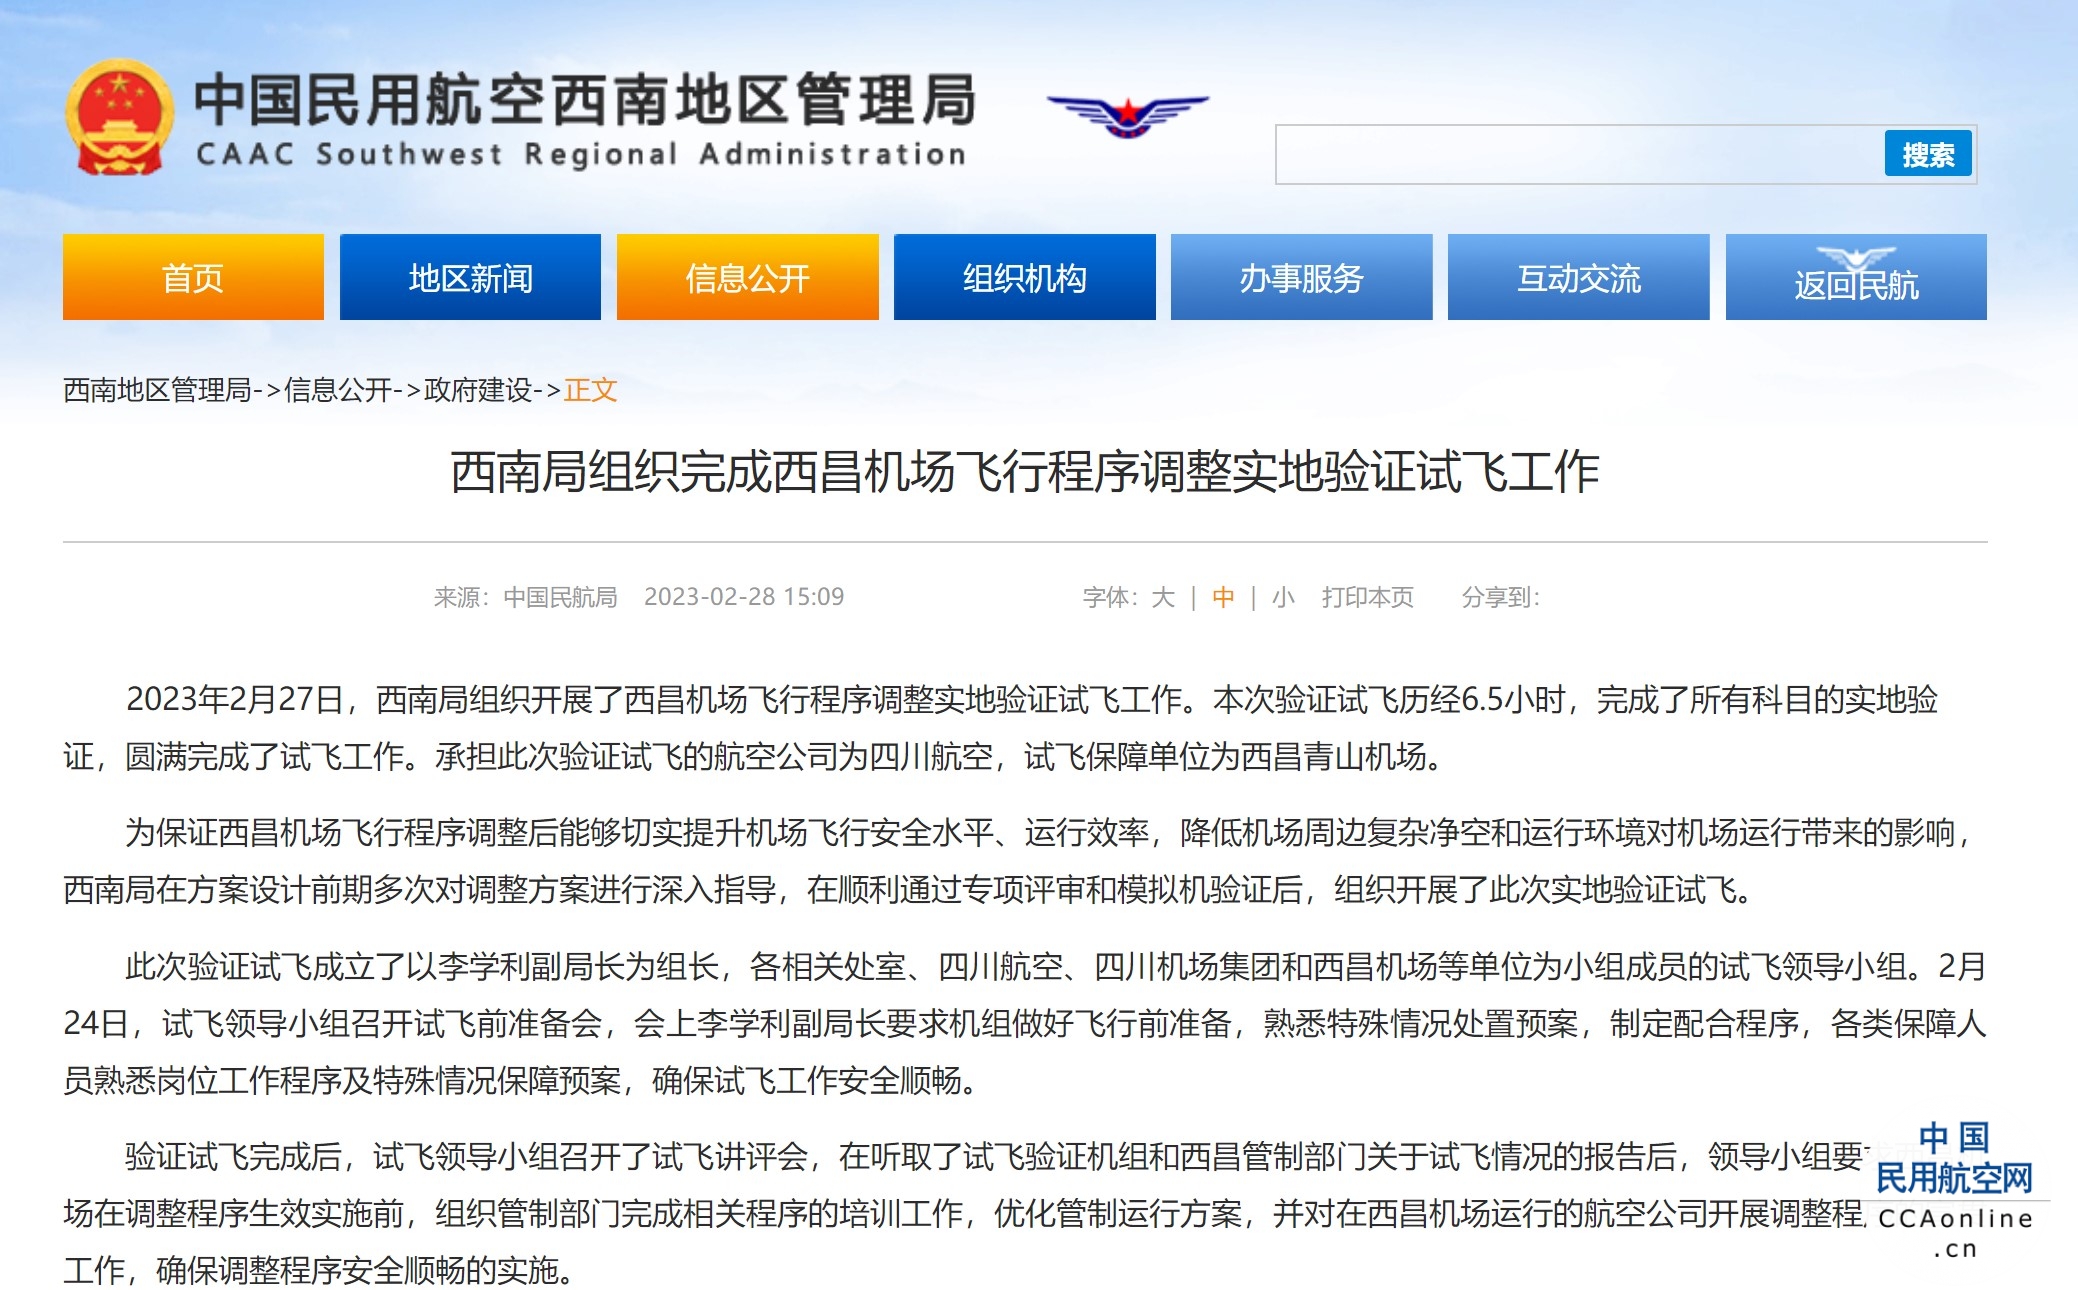 西南局组织完成西昌机场飞行程序调整实地验证试飞工作